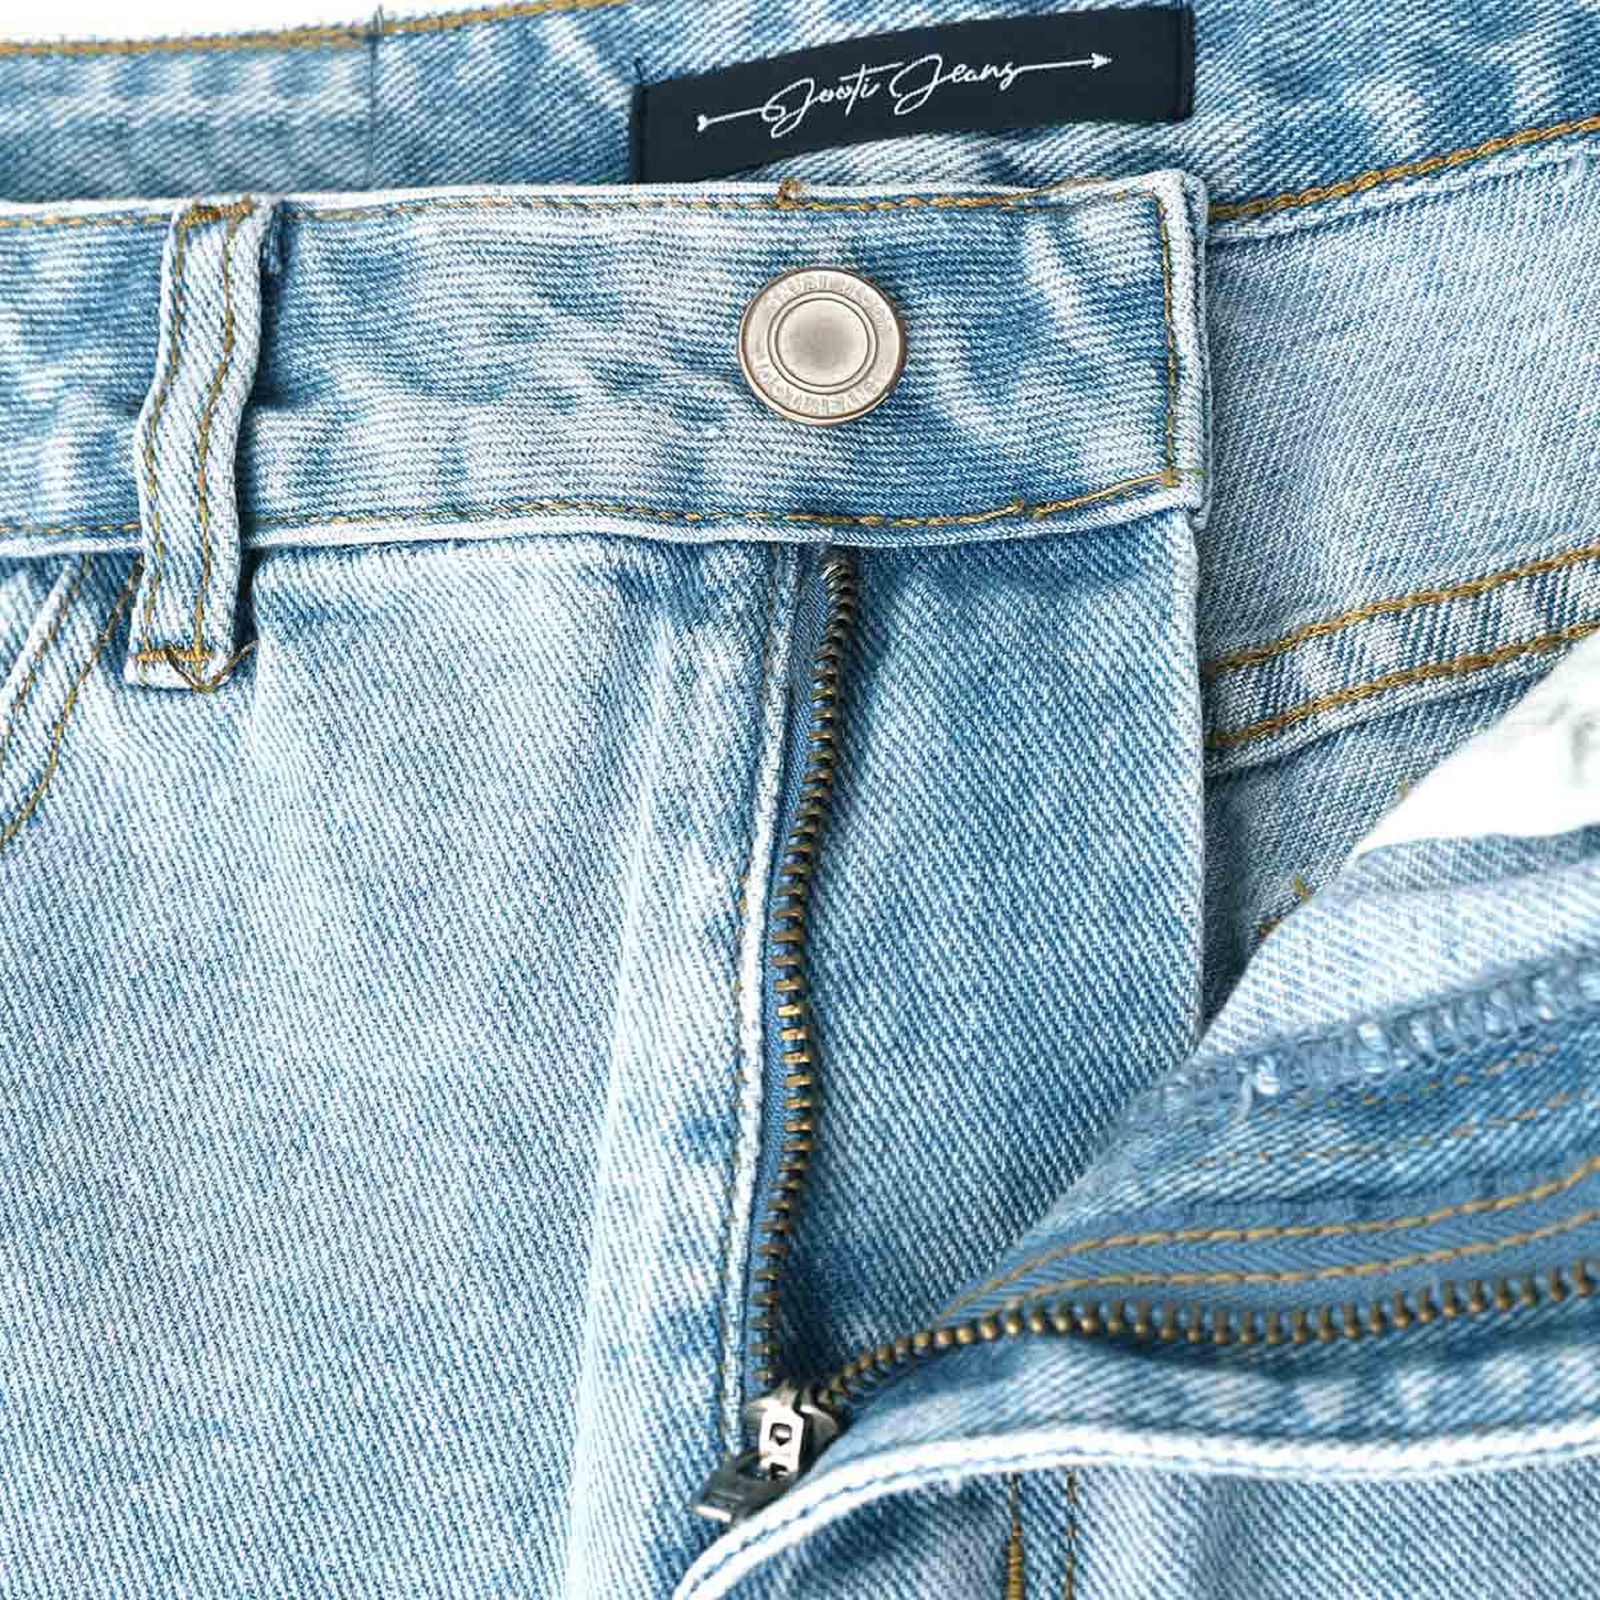 شلوارک زنانه جوتی جینز مدل 20262 رنگ آبی -  - 5